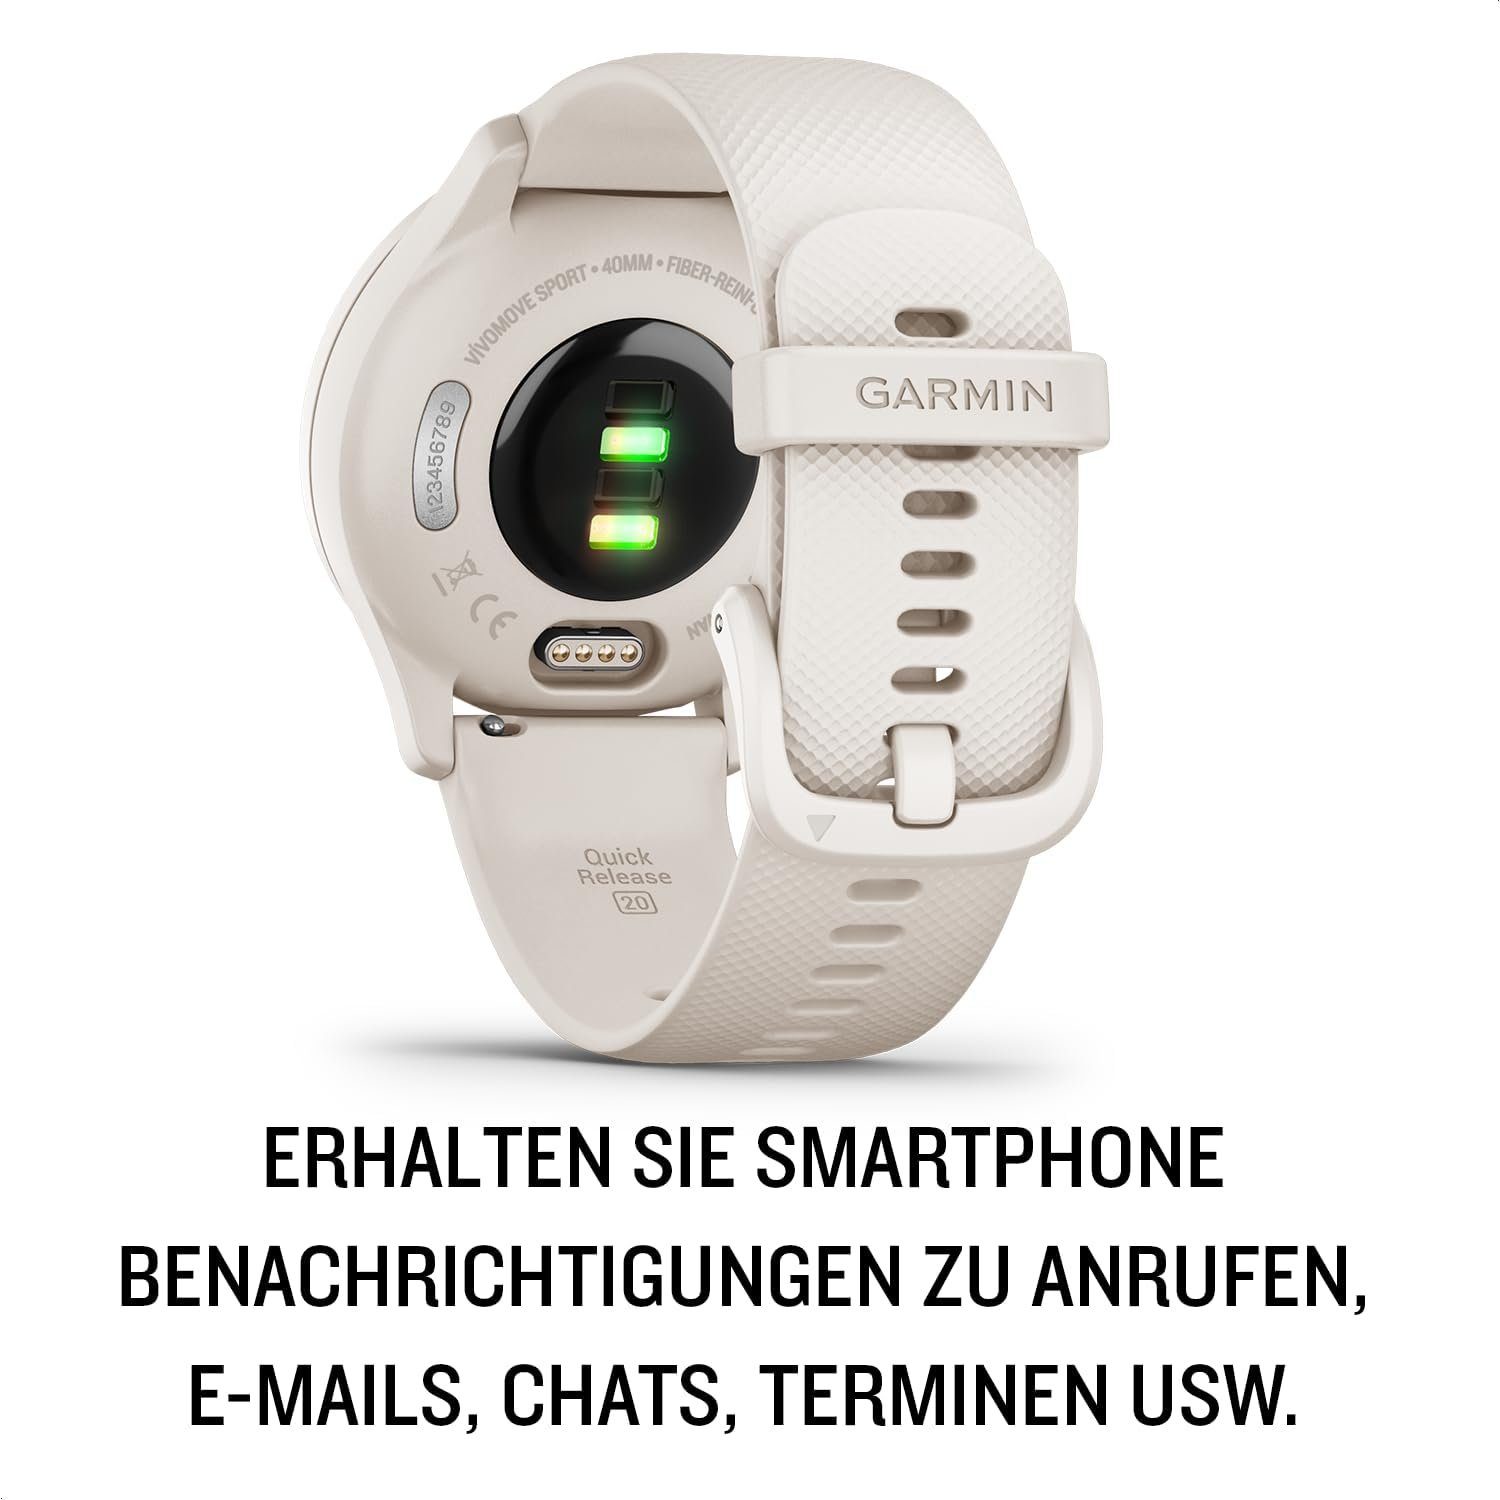 Garmin Smartwatch (Android iOS), Zeigern und Touchdisplay. Sport- und  Gesundheitsfunktionen Smartphone